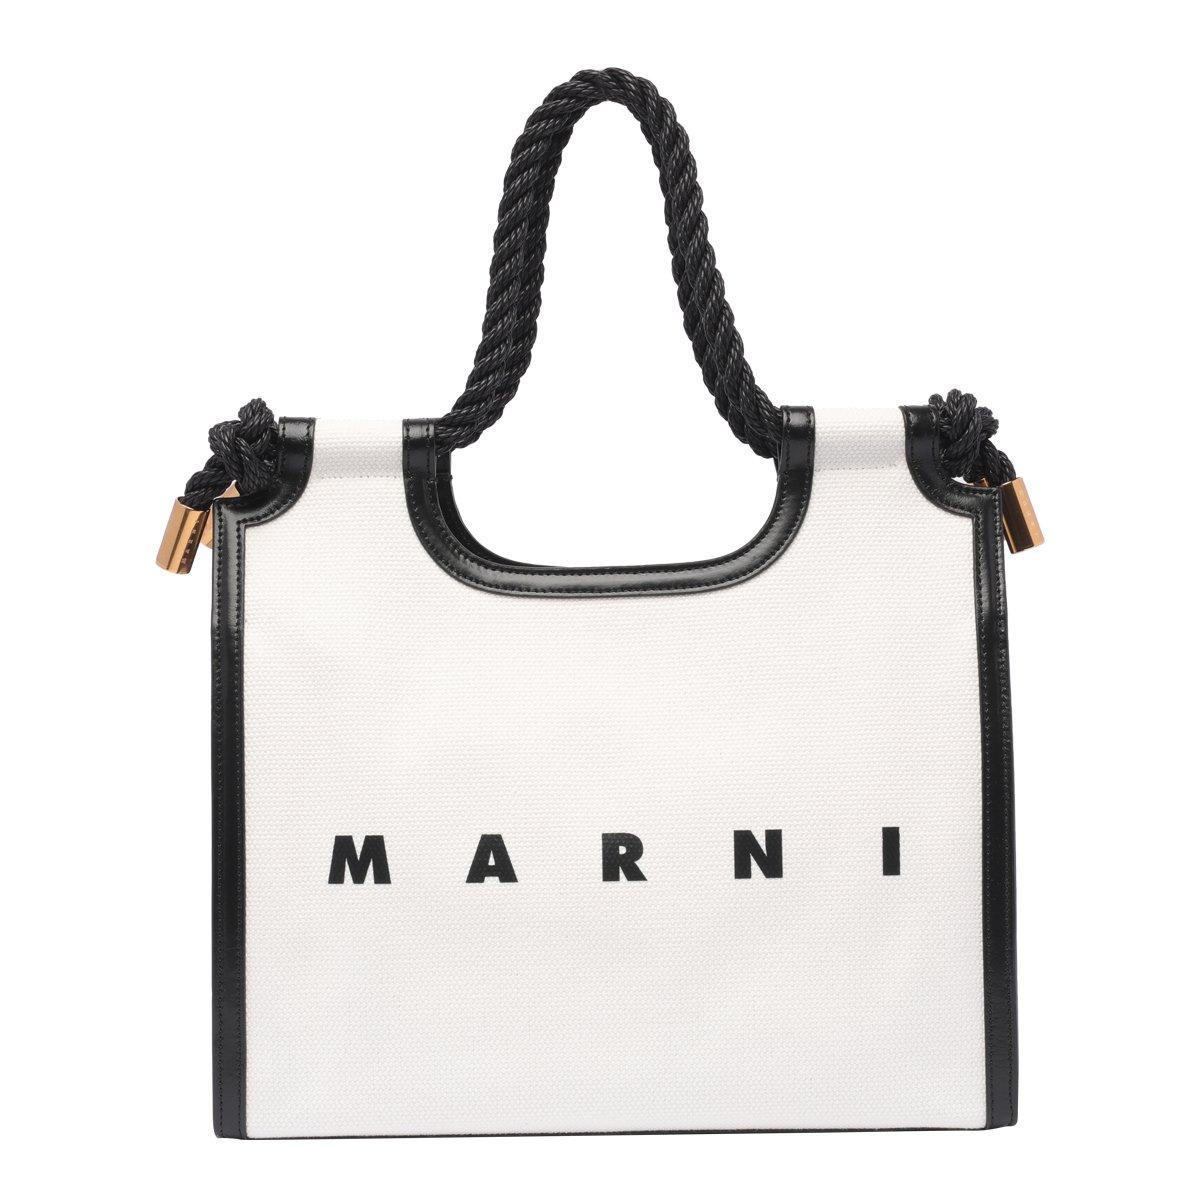 Marni Marcel Logo Printed Tote Bag In Bianco/nero